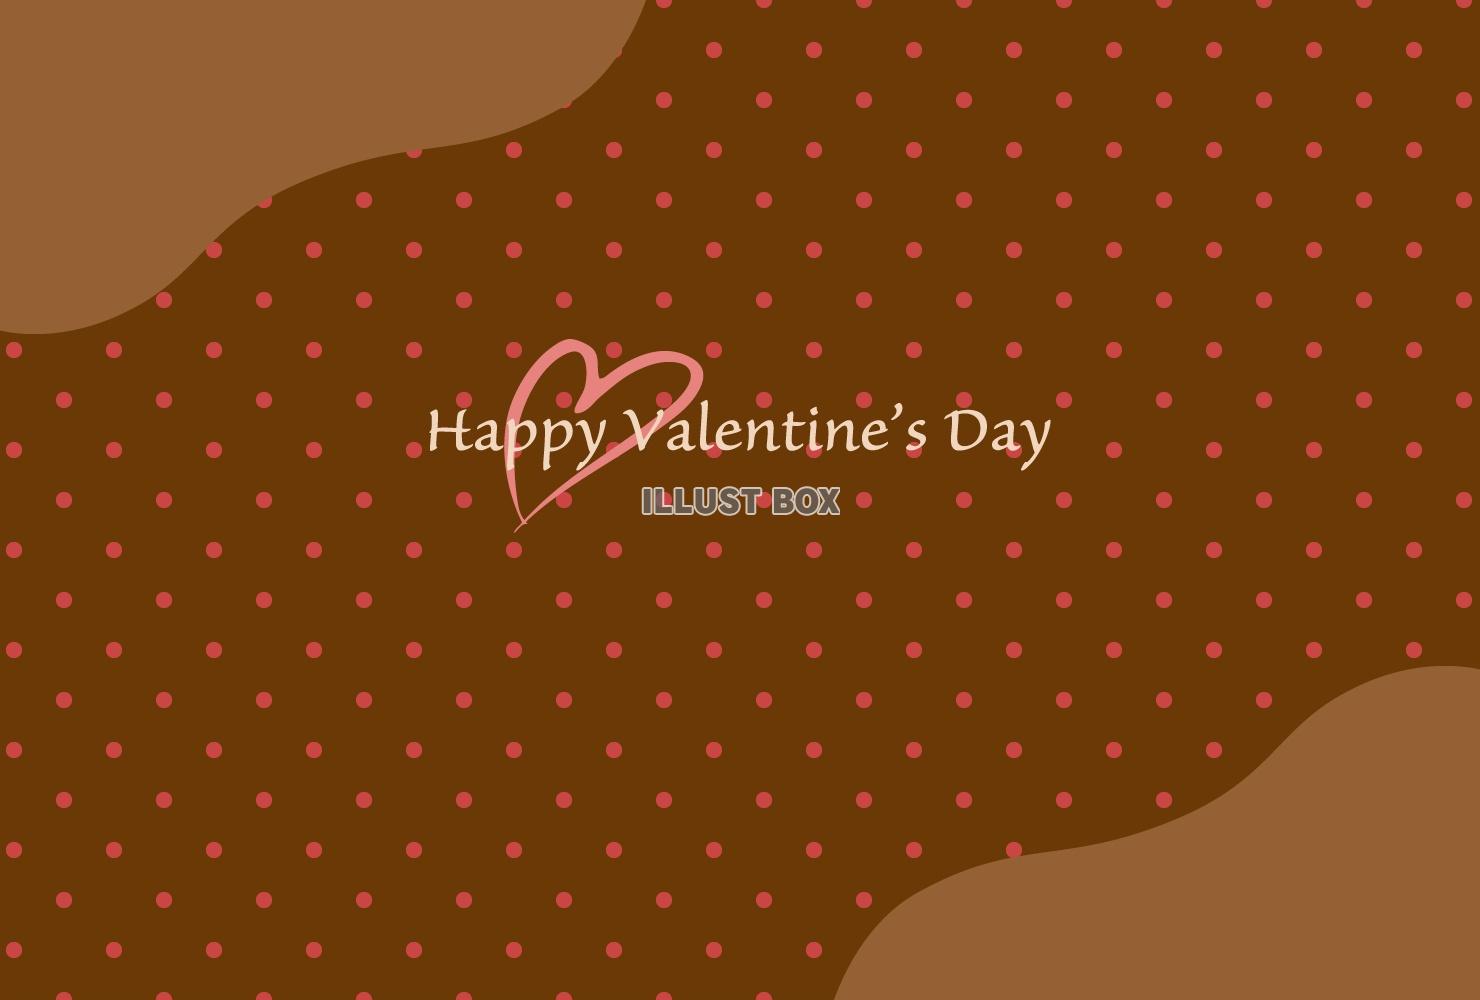 水玉模様のバレンタインカード/チョコレート色